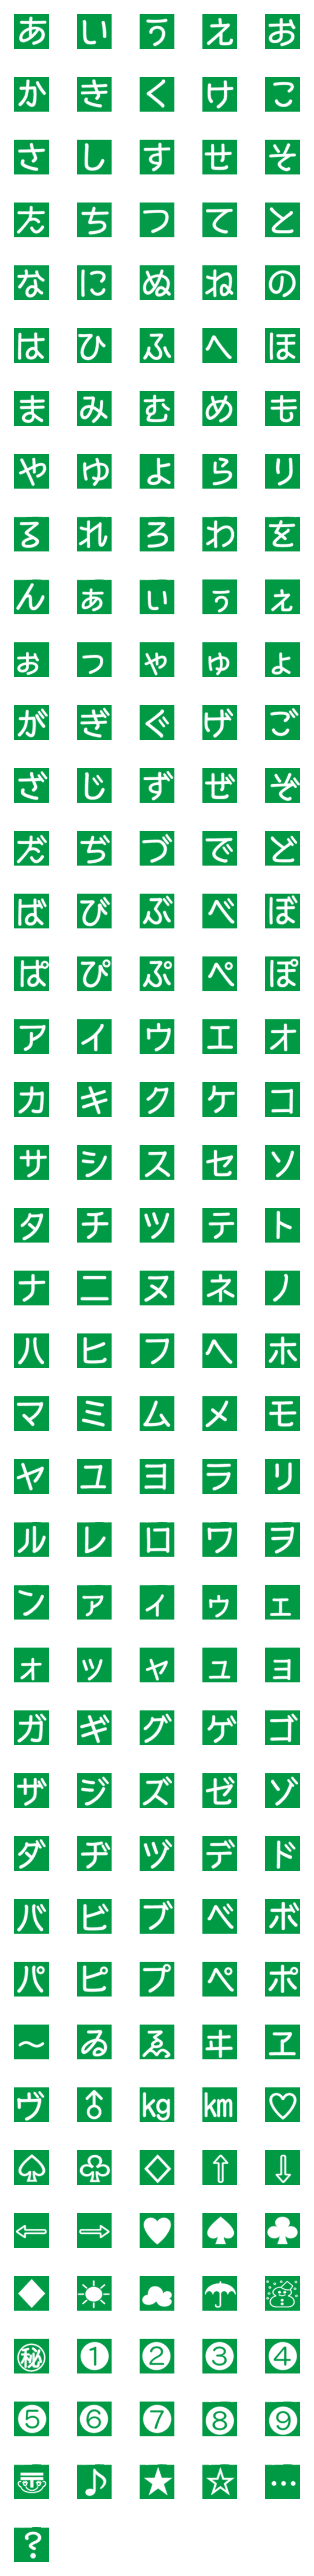 Line絵文字 緑の背景に白抜きデコ文字と絵文字 1種類 1円